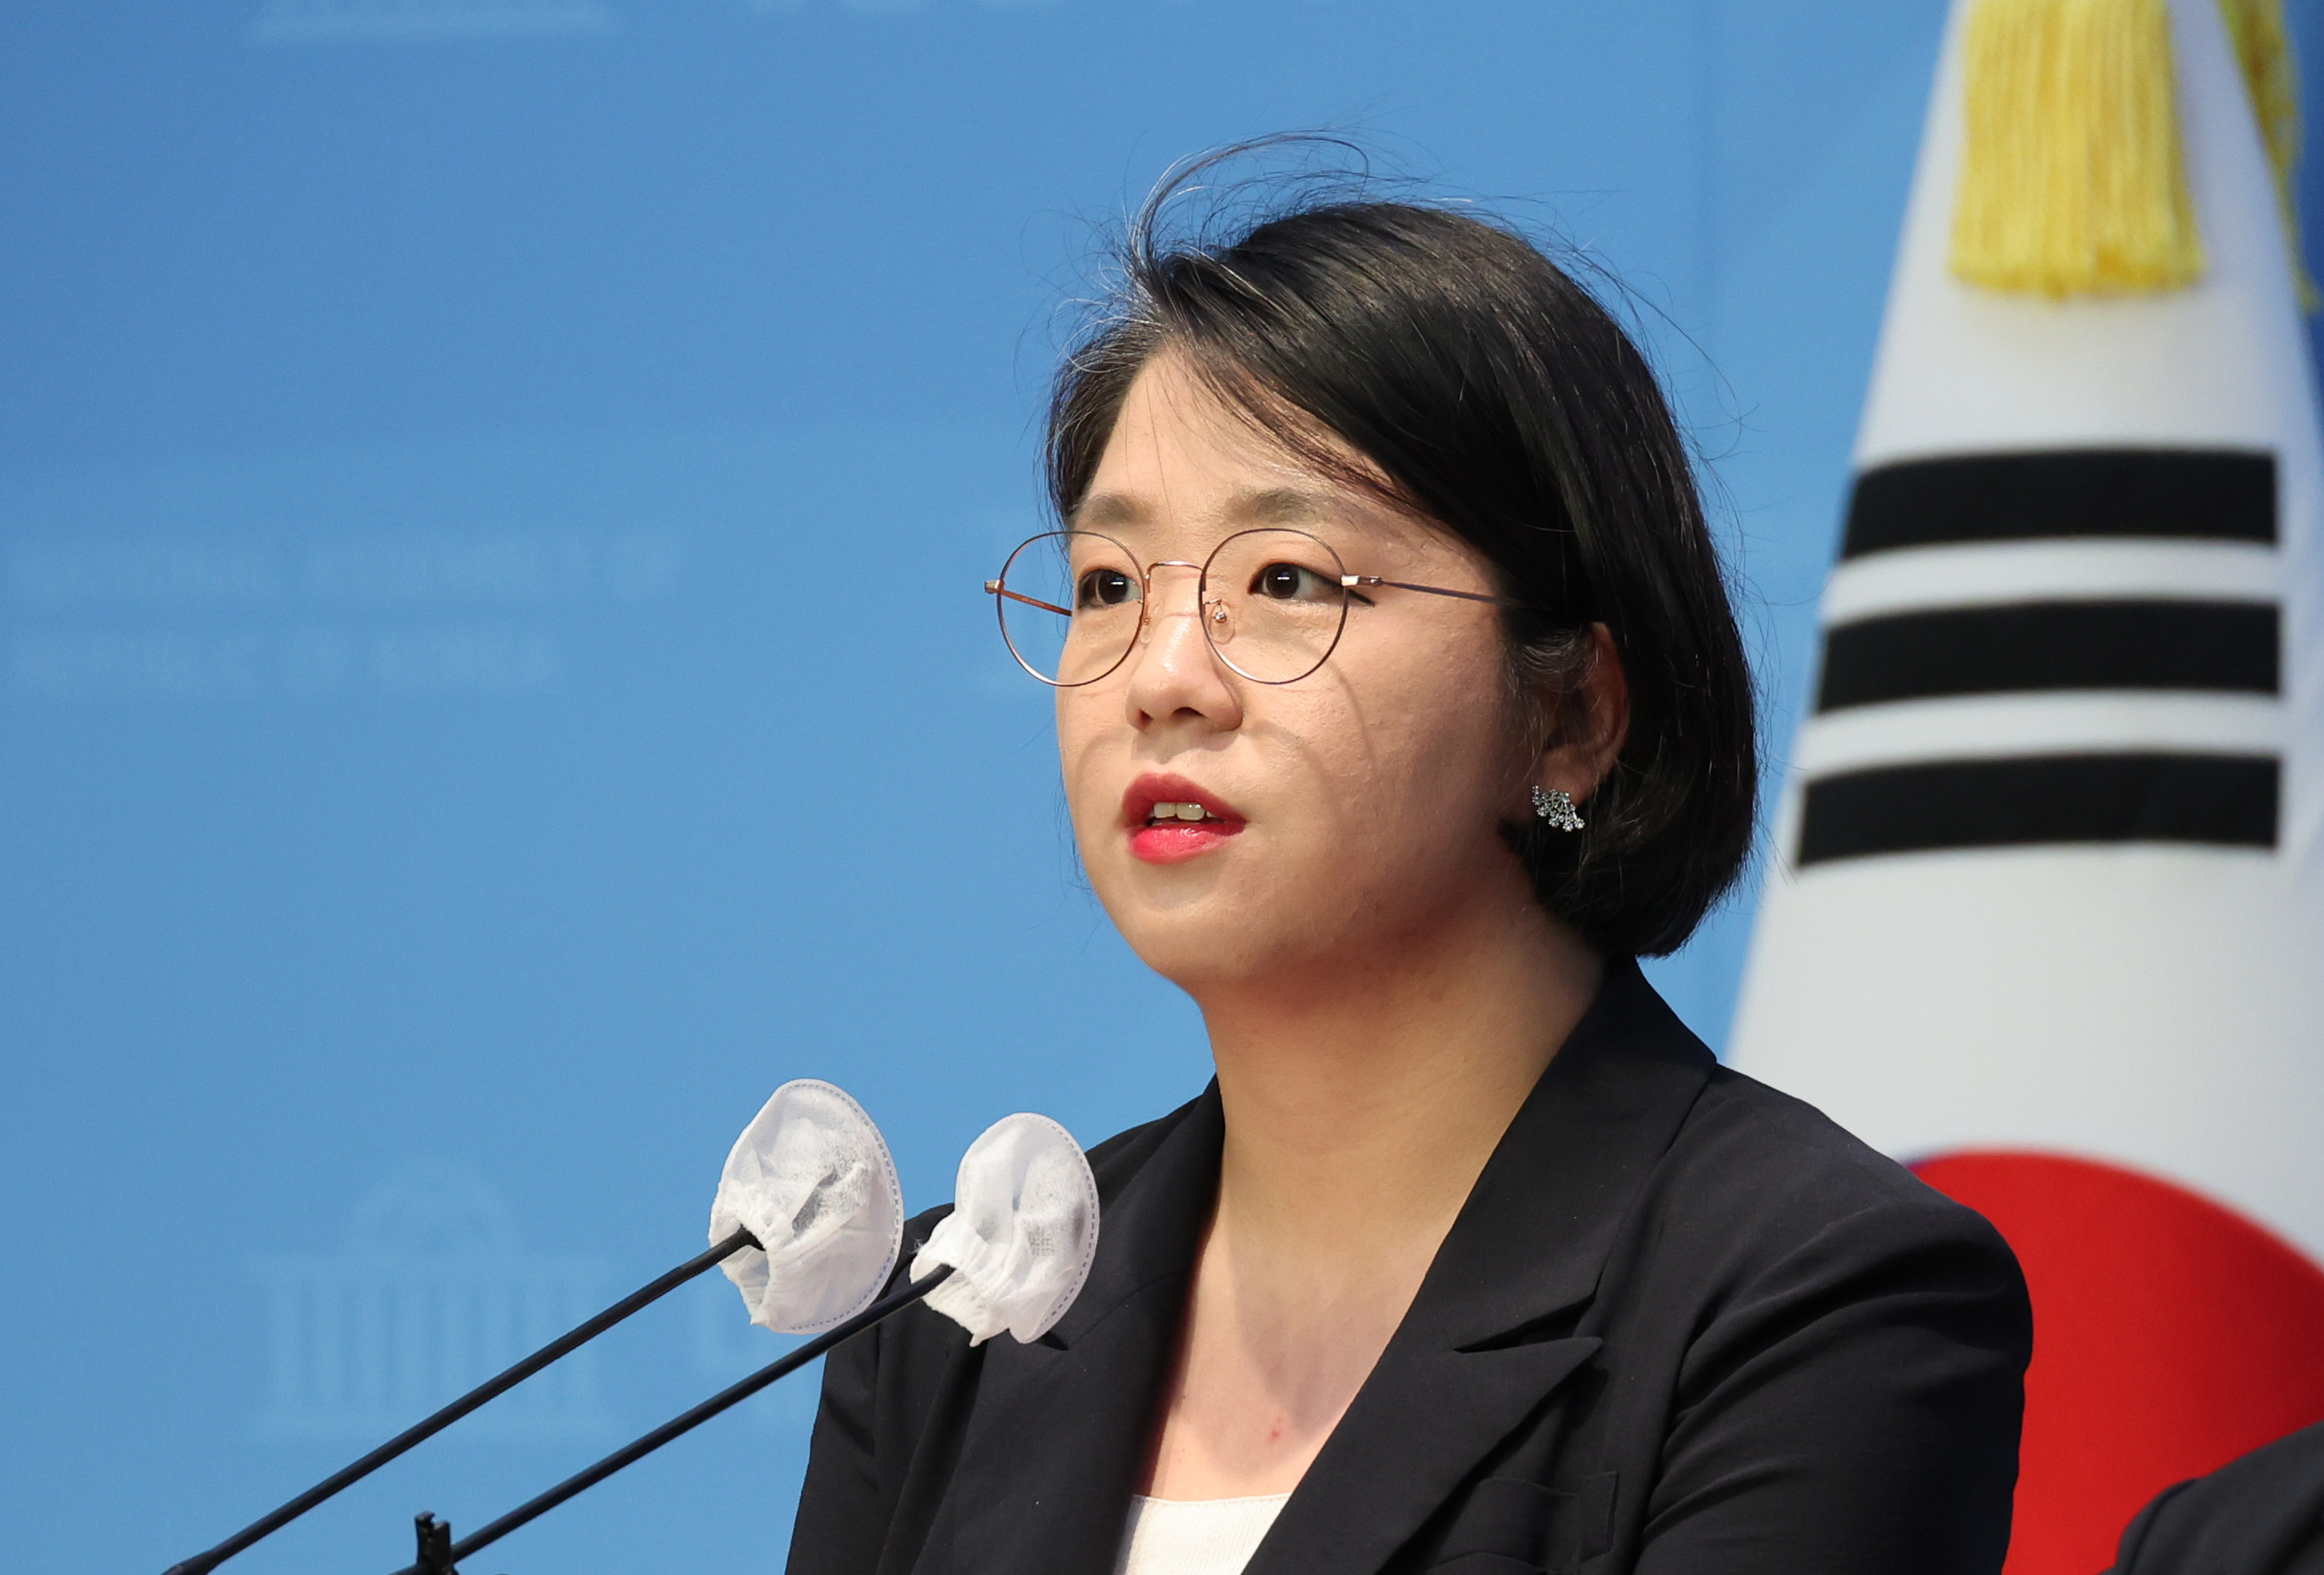 잼버리 대회 파행 관련 입장발표 기자회견하는 용혜인 의원